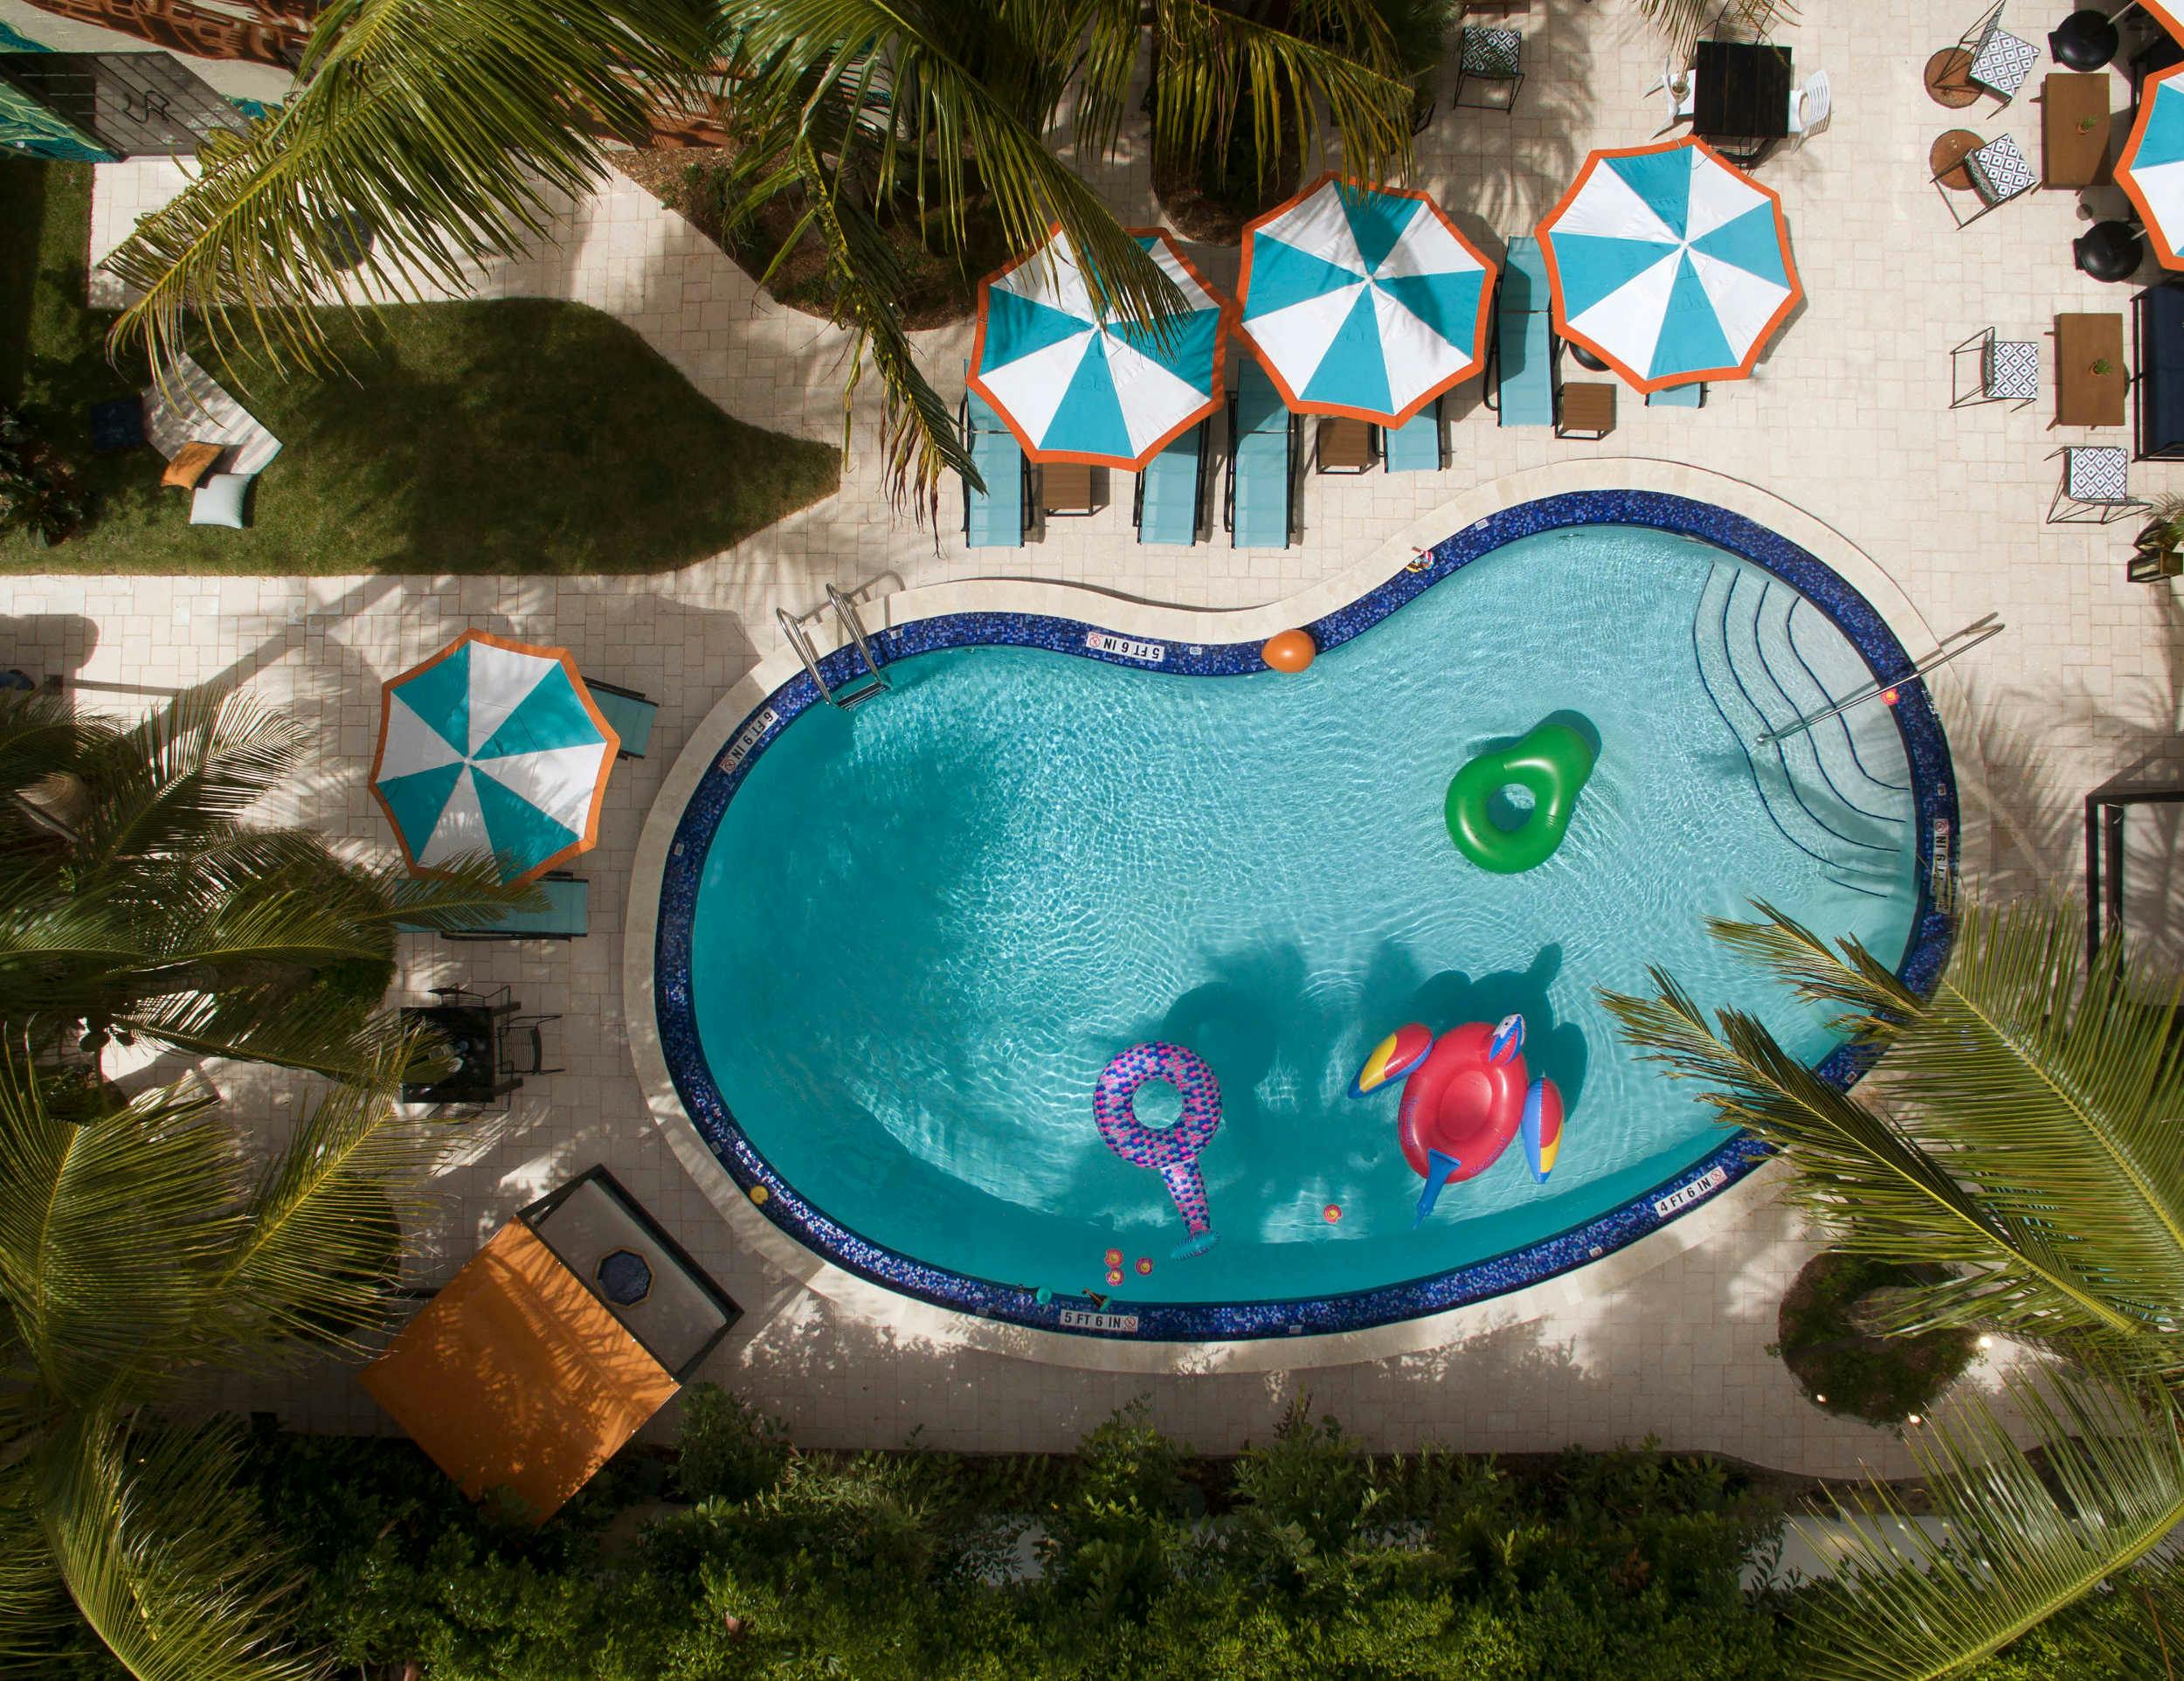 Generator Miami swimming pool